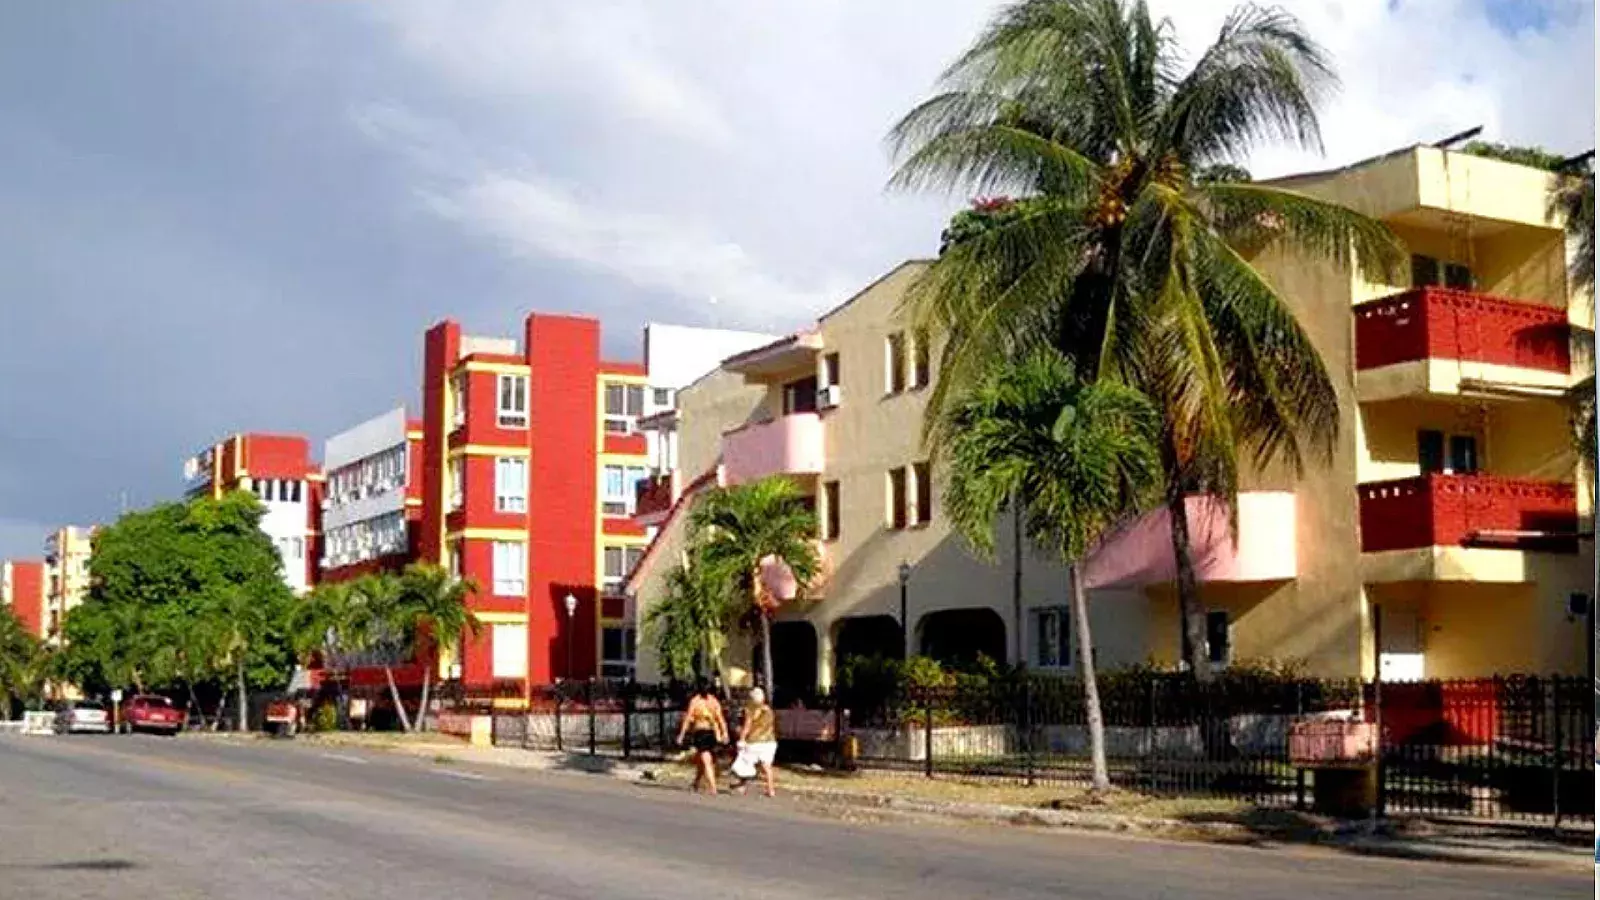 Villa Panamericana de La Habana